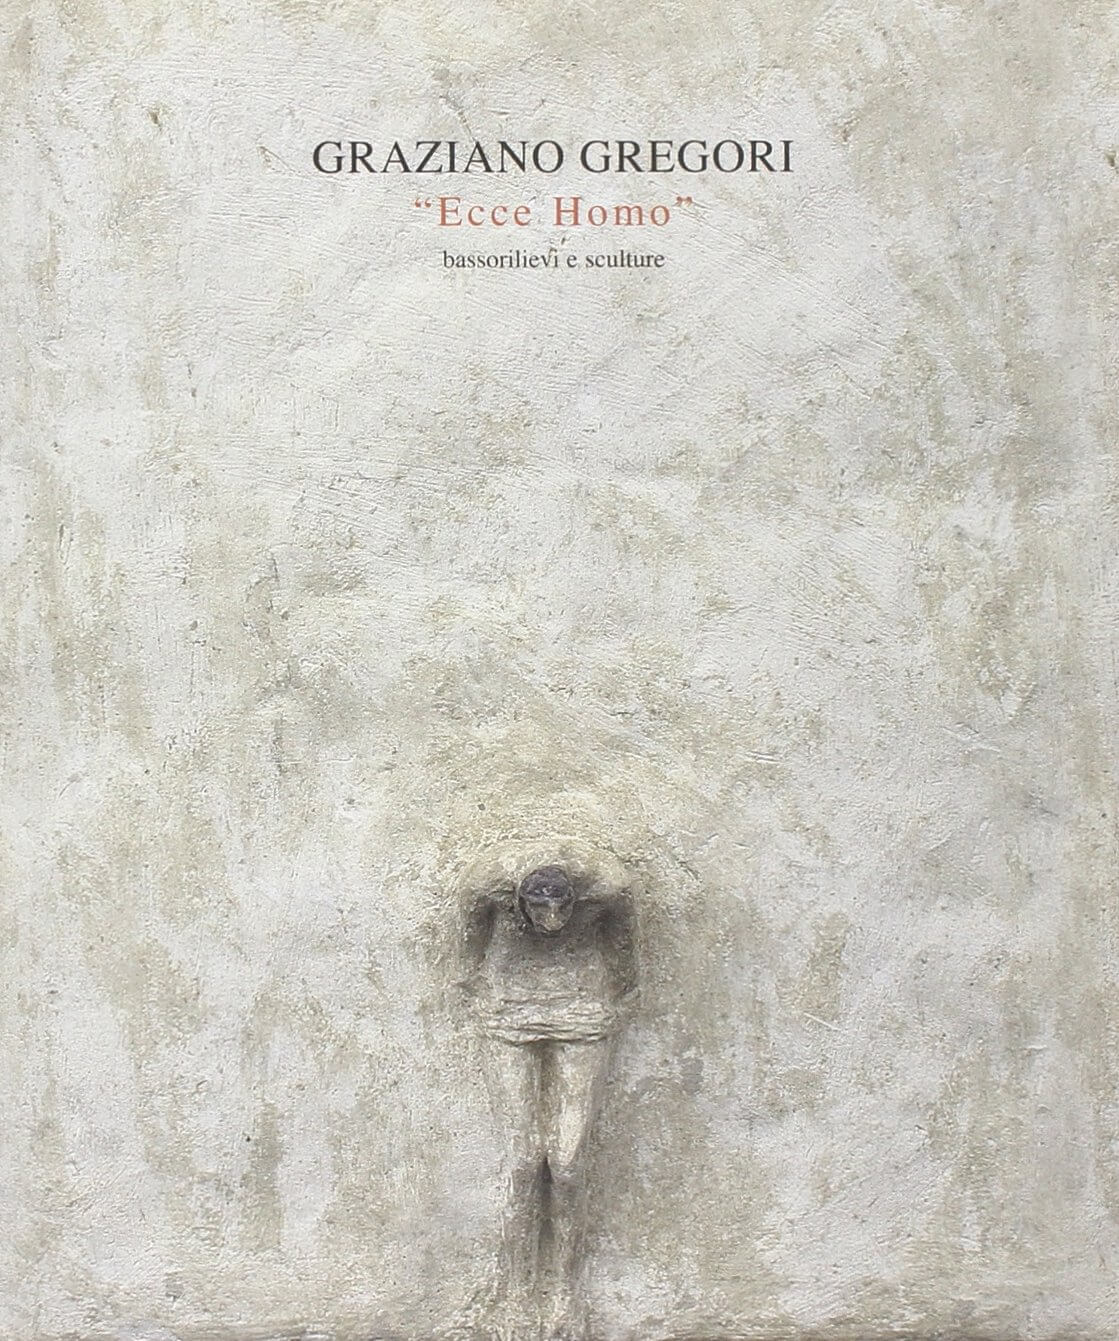 Pubblicazioni Graziano Gregori